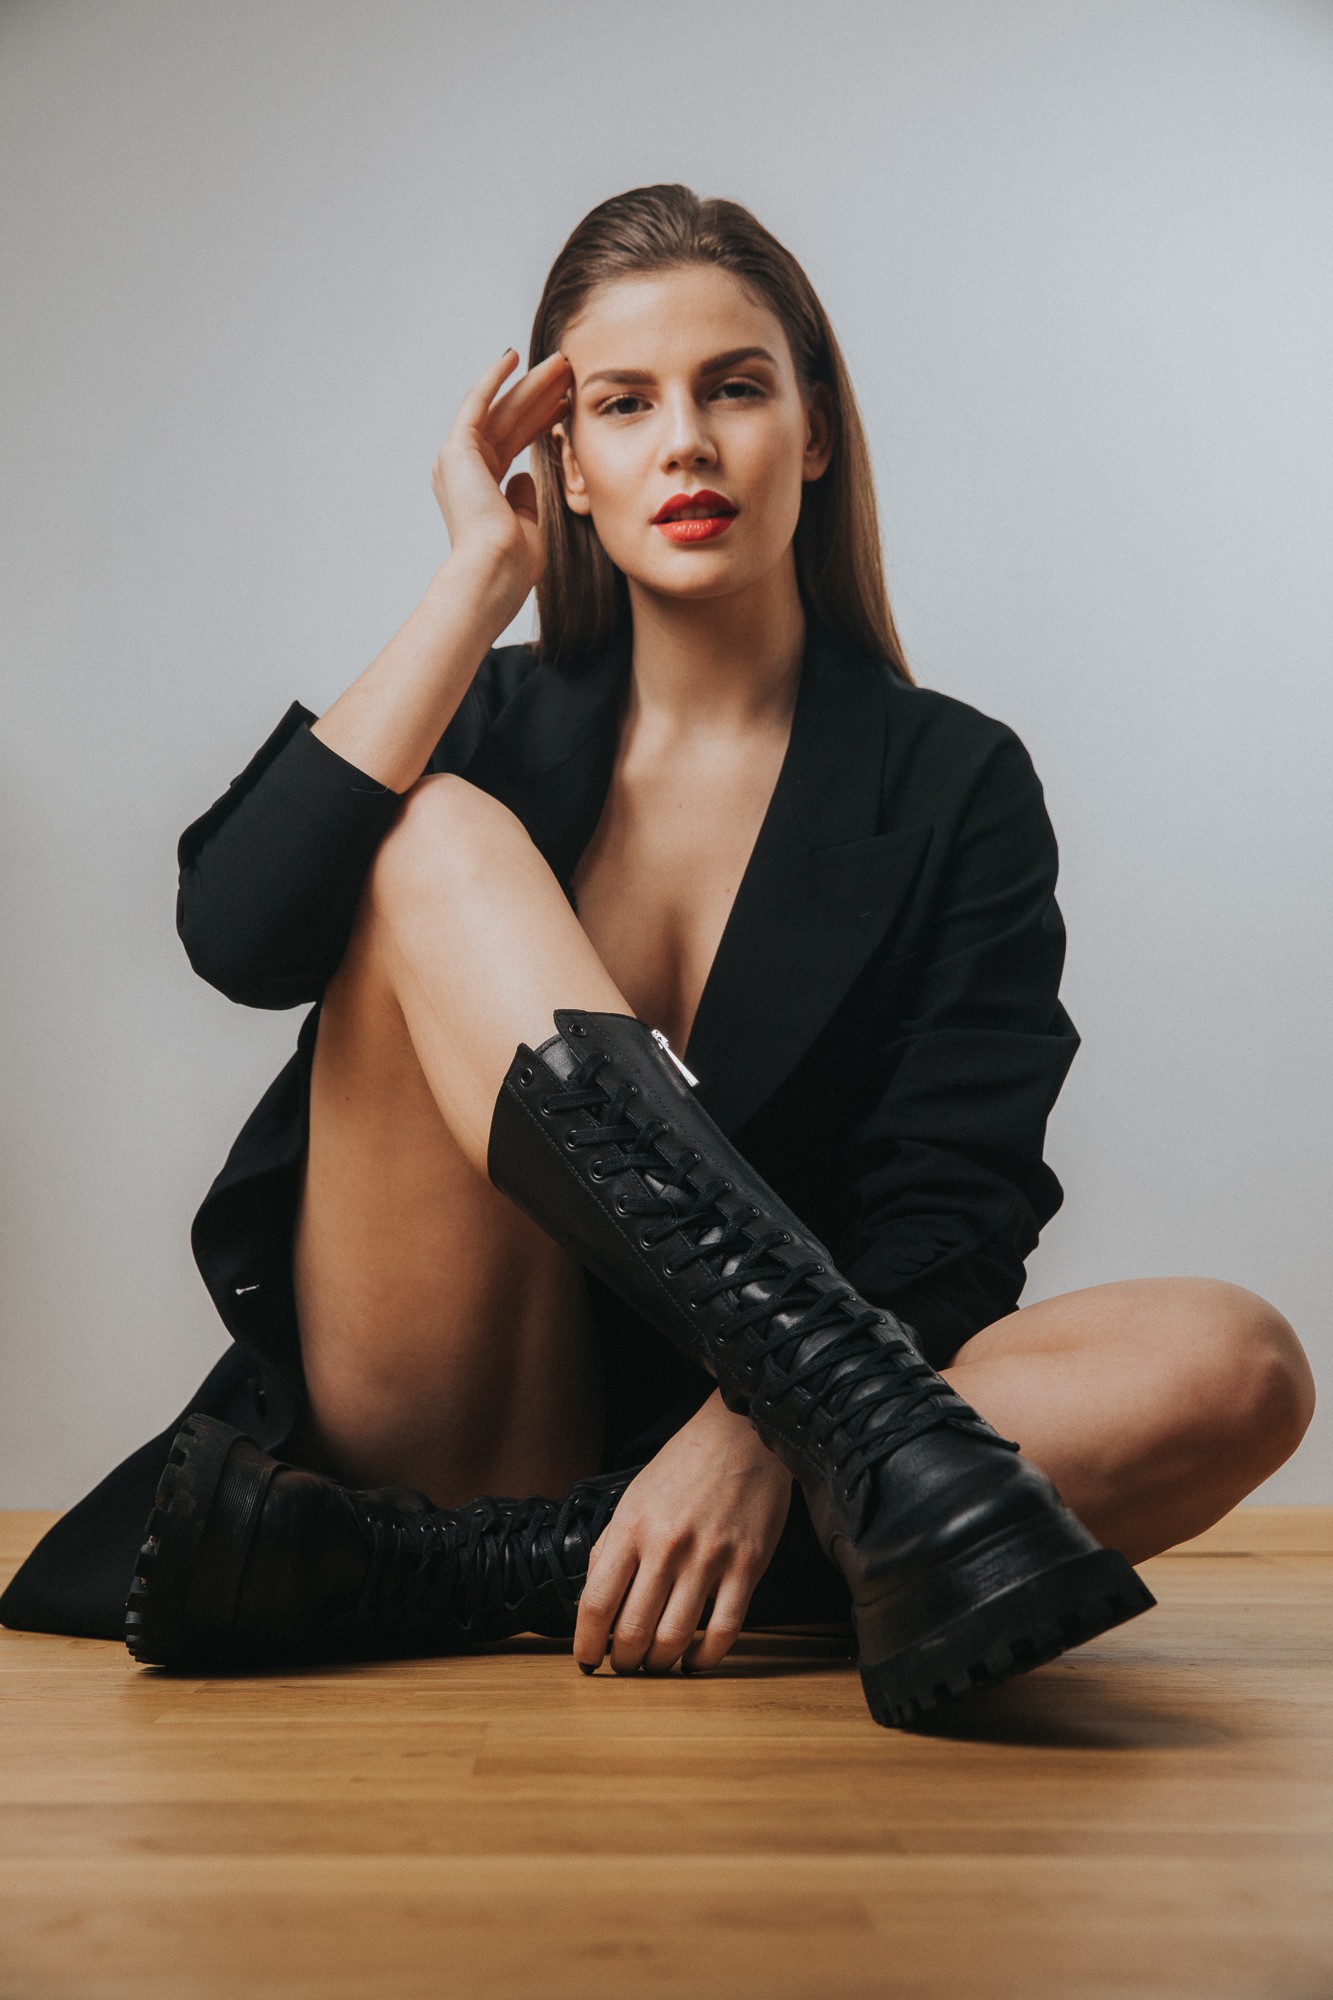 Model Test - Lejla - Beauty Portrait